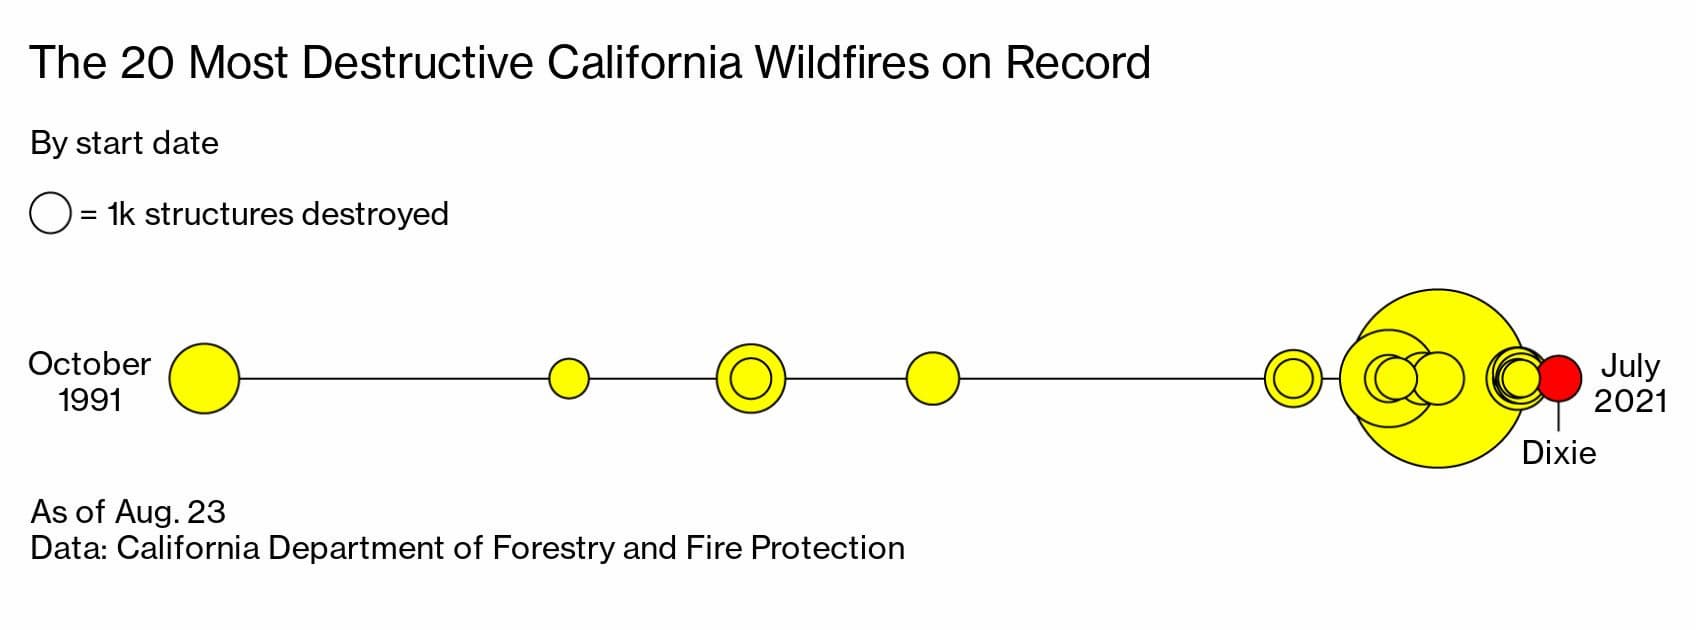 カリフォルニア州で発生した記録的な山火事のうち、最も破壊的な20件。最近に集中している。